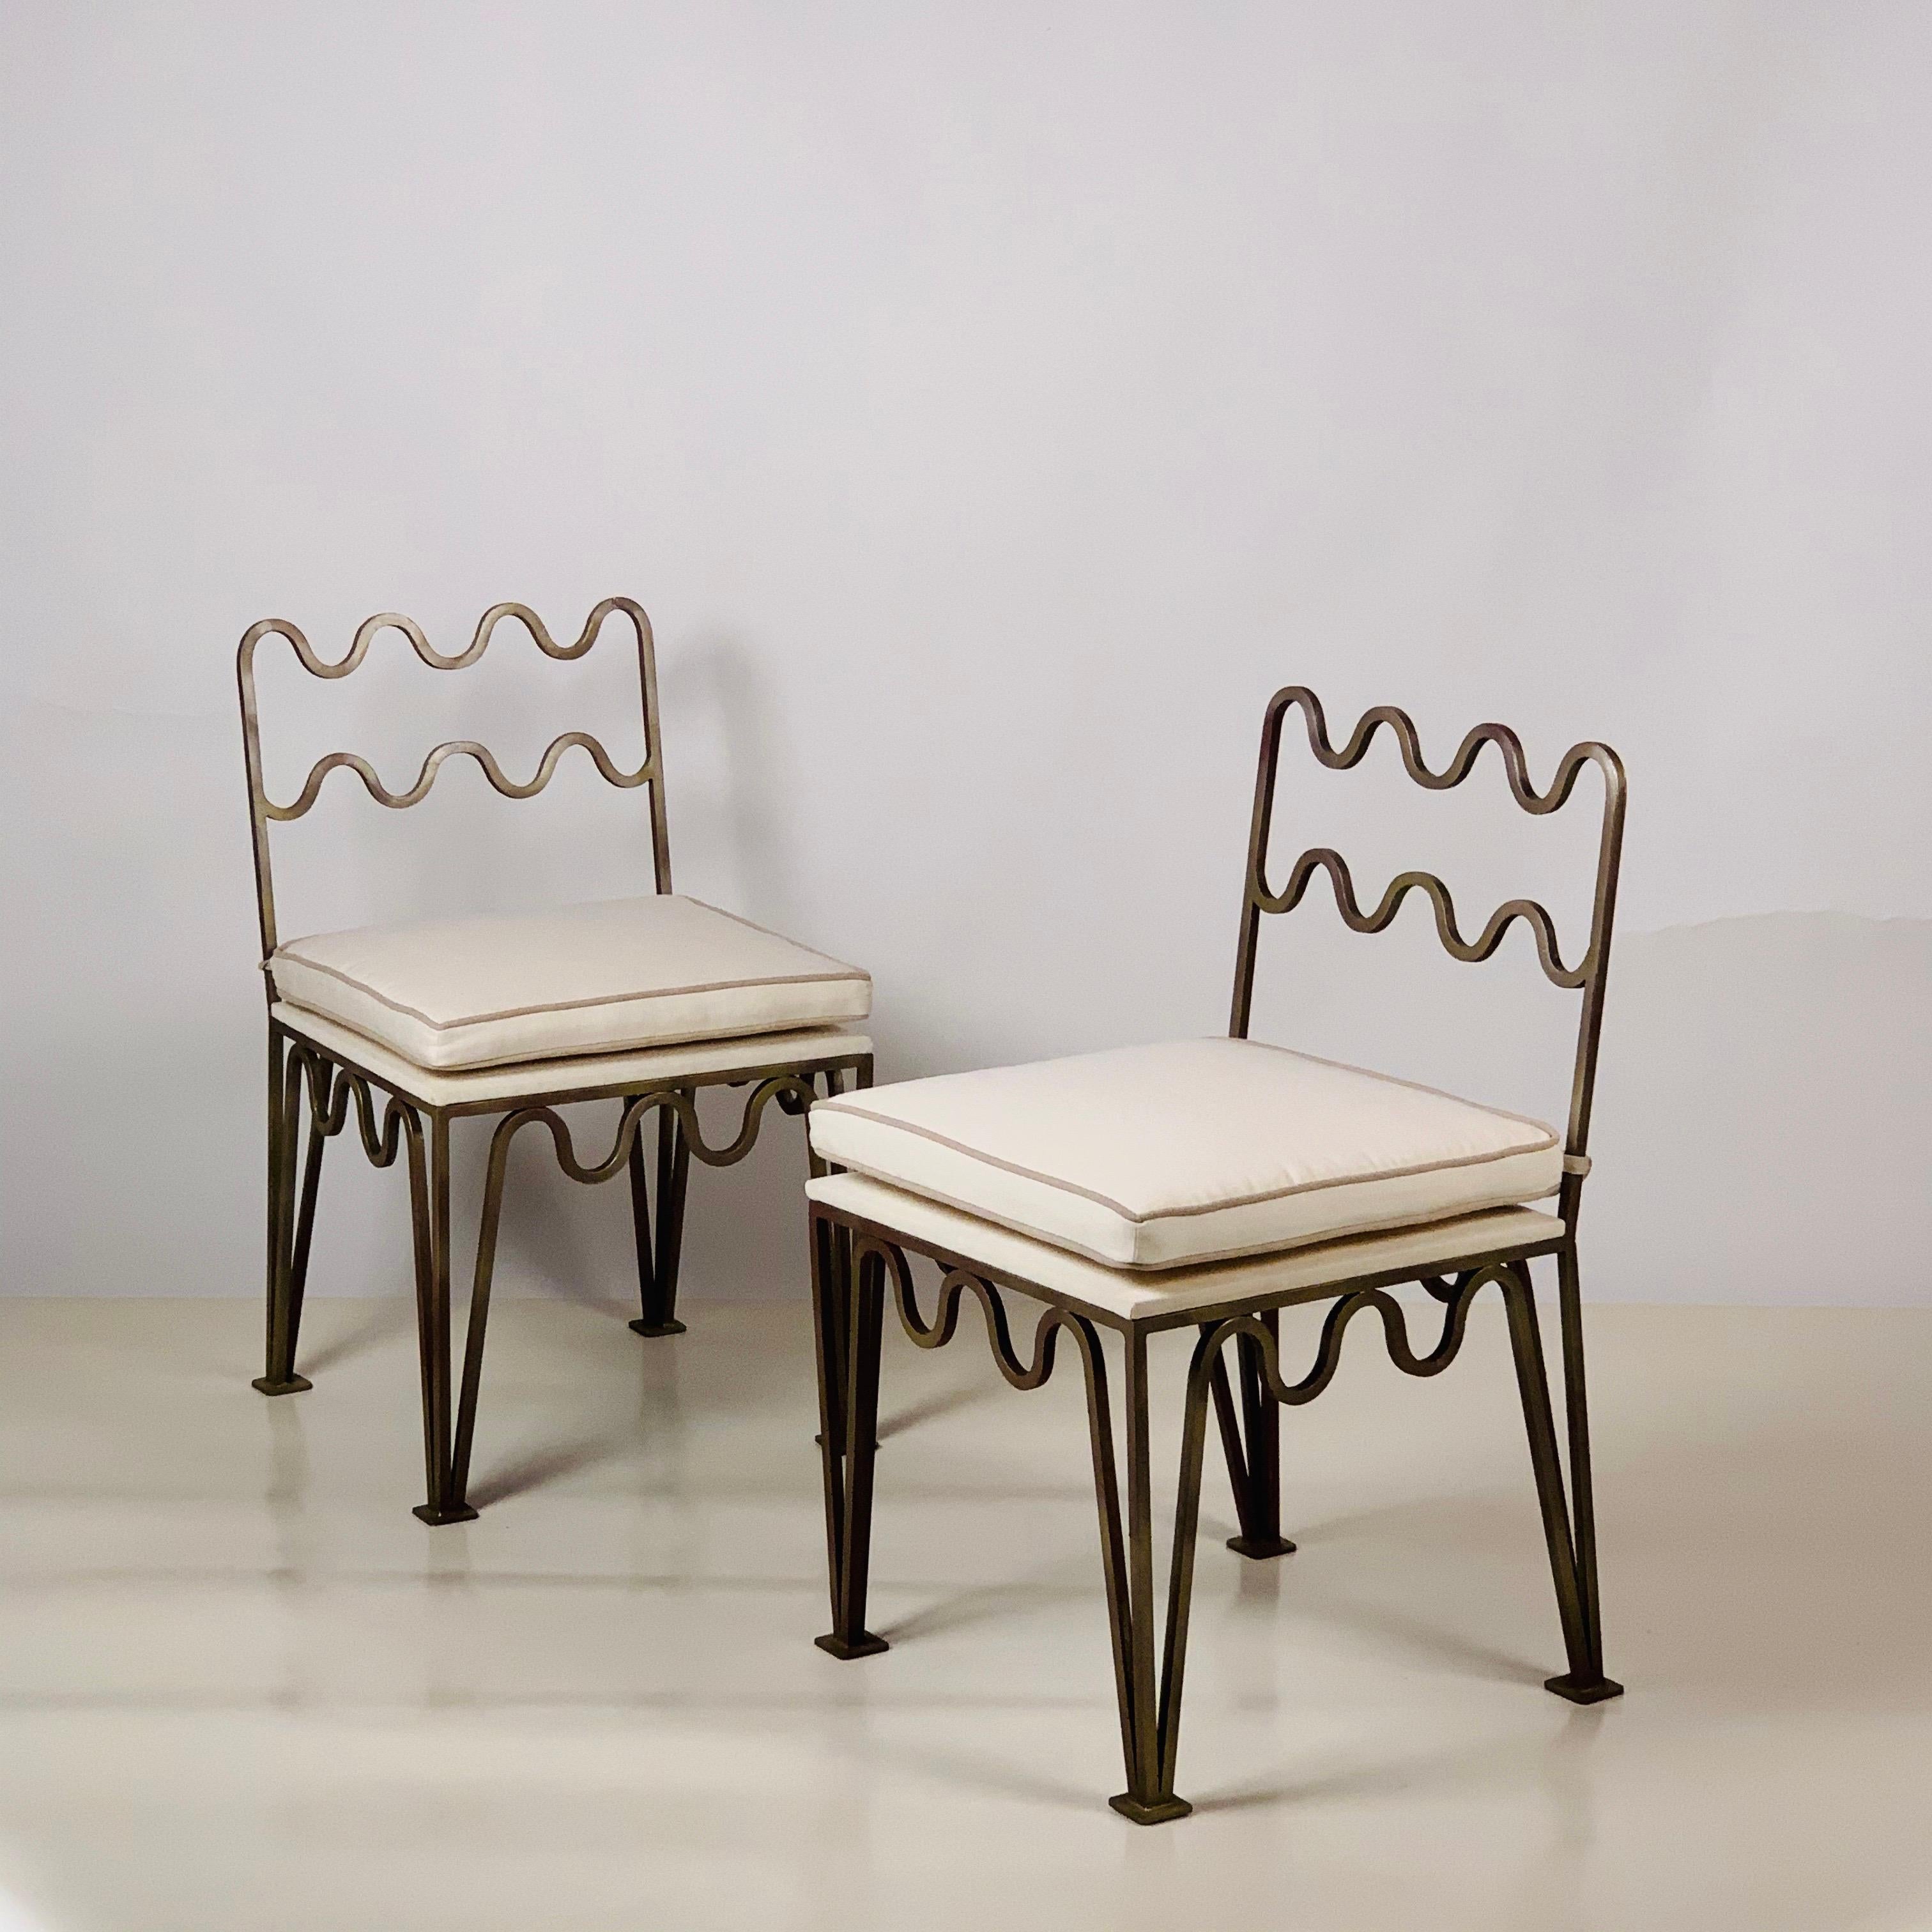 Paire de chaises d'appoint 'Méandre' en bronze foncé ondulé par Design/One.

Ces chaises Méandre™ de notre ligne exclusive Design Frères® sont fabriquées à la main dans notre atelier de Los Angeles par nos artisans qualifiés. Ces pièces classiques